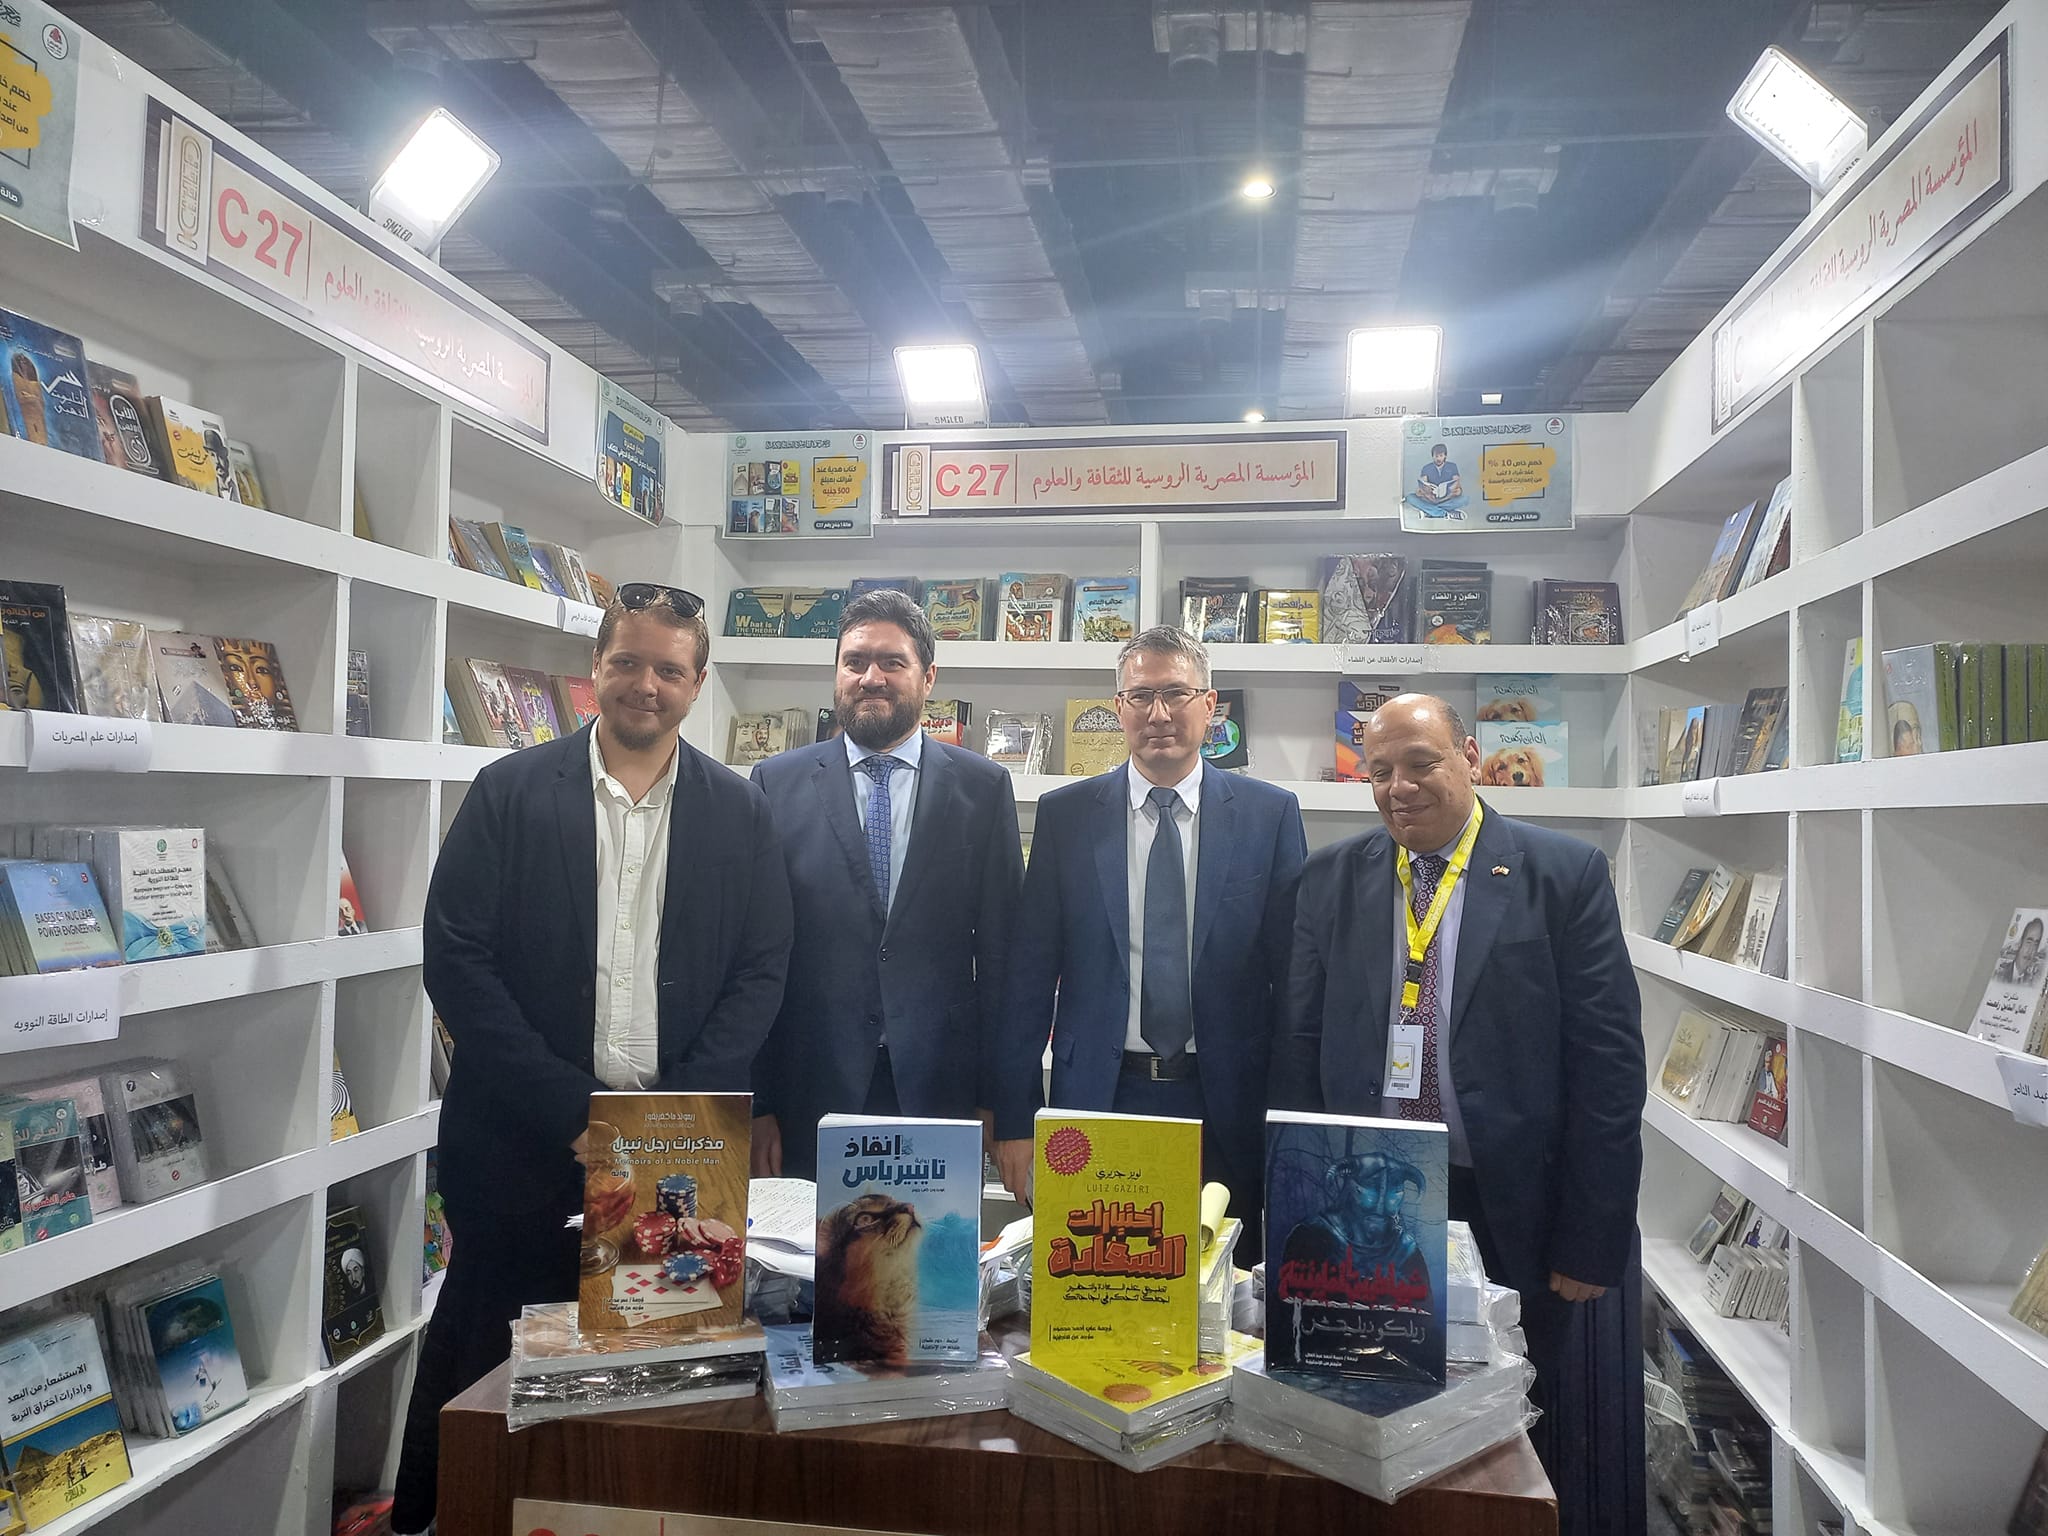 إصدارات ”المؤسسة المصرية الروسية للثقافة والعلوم“ في معرض القاهرة الدولي للكتاب